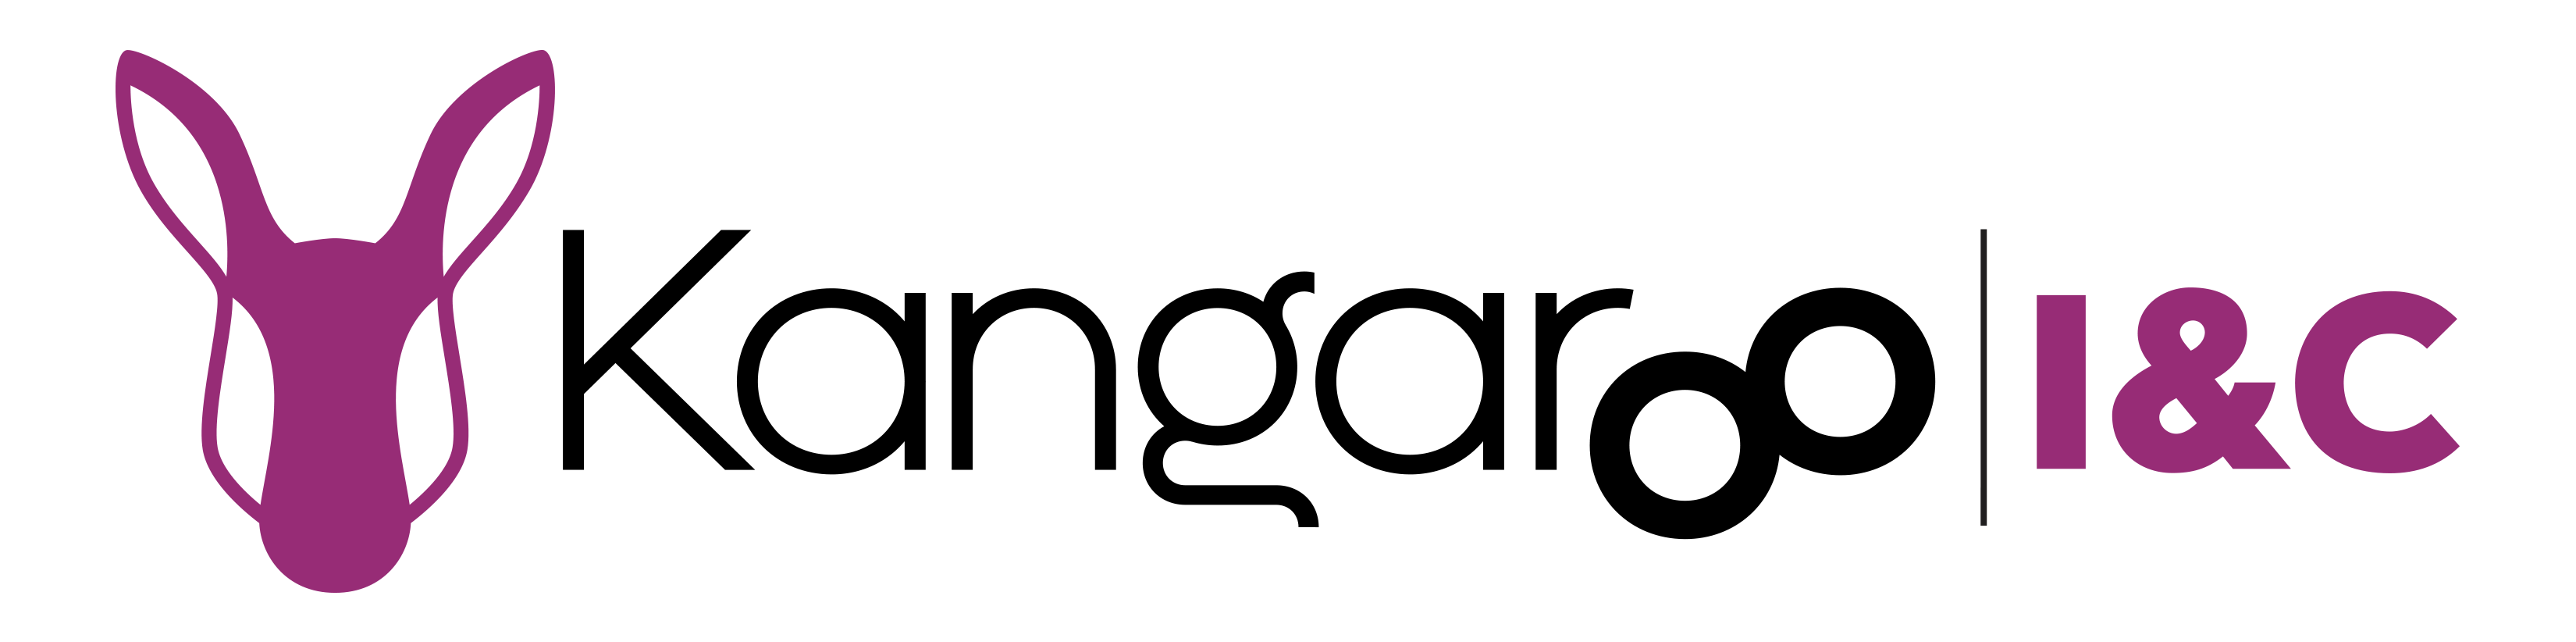 Product 1 Logo